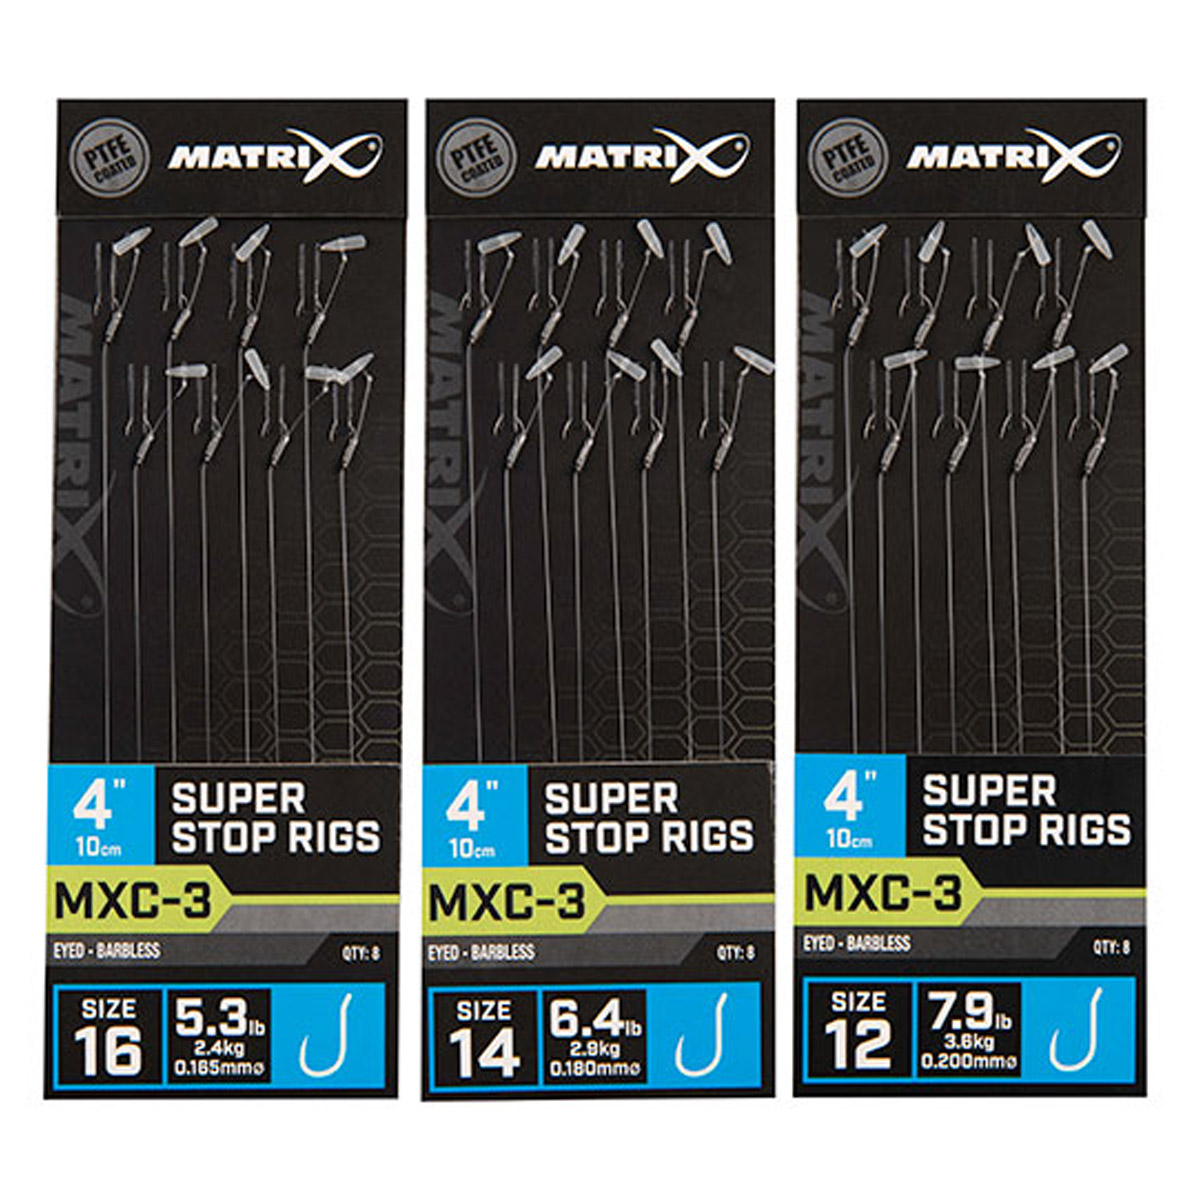 Matrix MXC-3 4" Super Stop Rigs